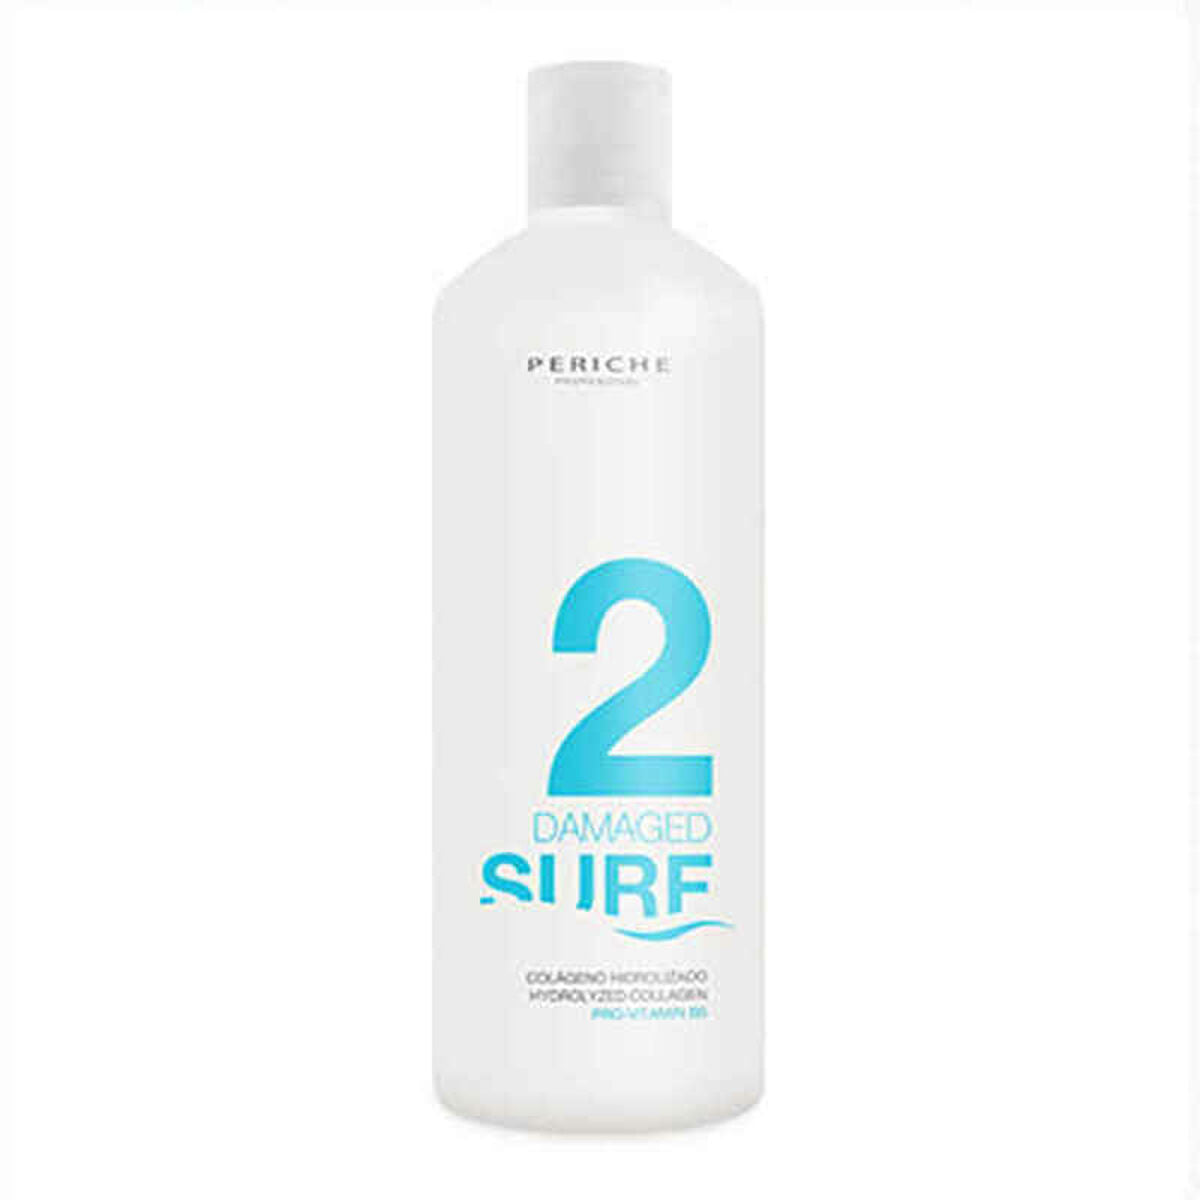 Periche di raddrizzamento dei capelli surf 2 danneggiati (450 ml)